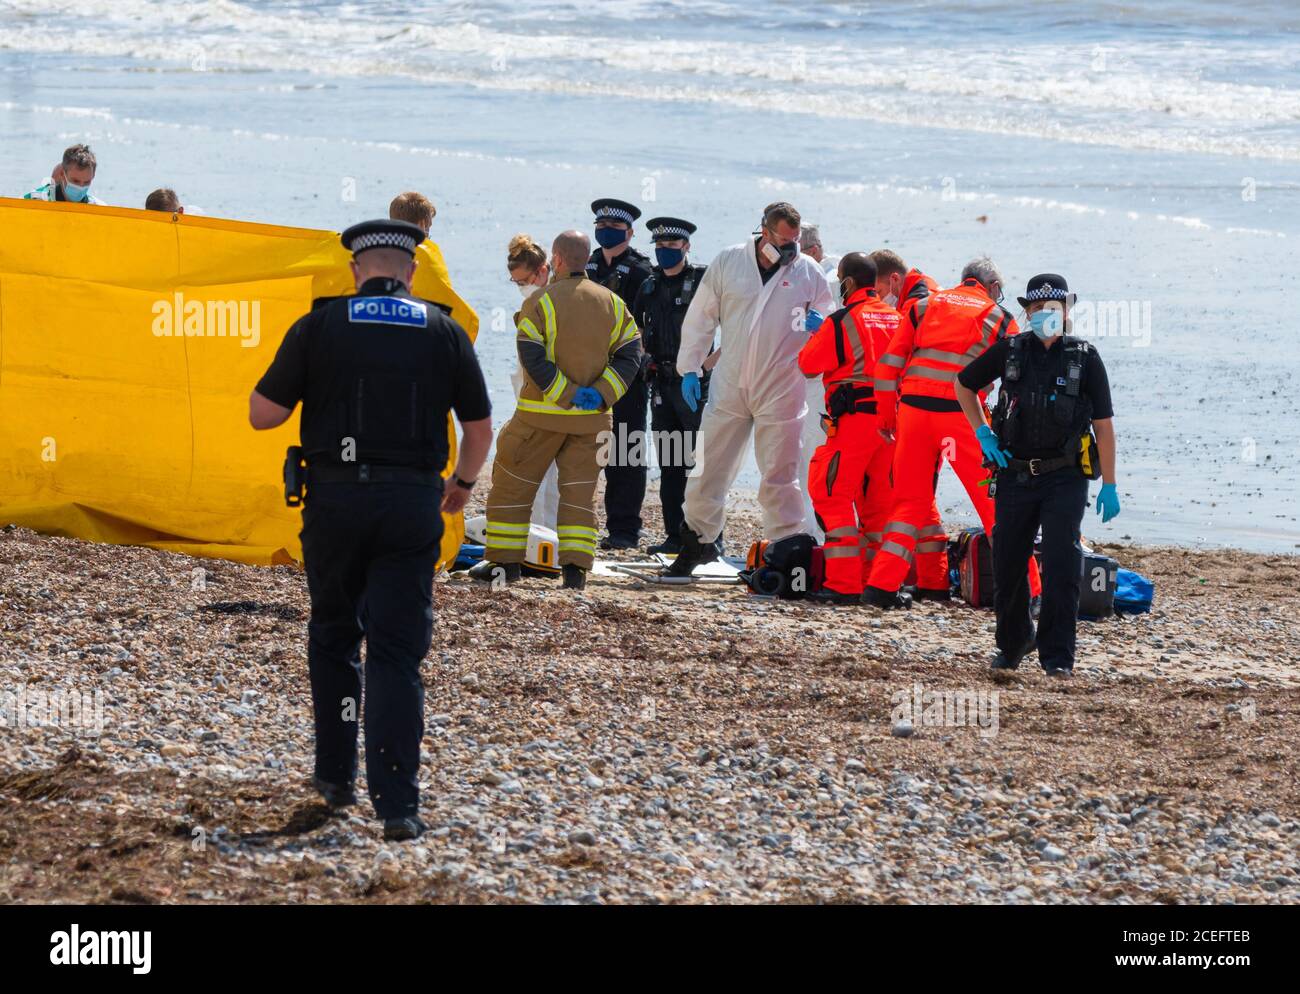 Services d'urgence (police, incendie, ambulance aérienne, ambulanciers paramédicaux) lors d'un incident sur une plage au Royaume-Uni. Tous portent des masques faciaux dus au coronavirus COVID19. Banque D'Images